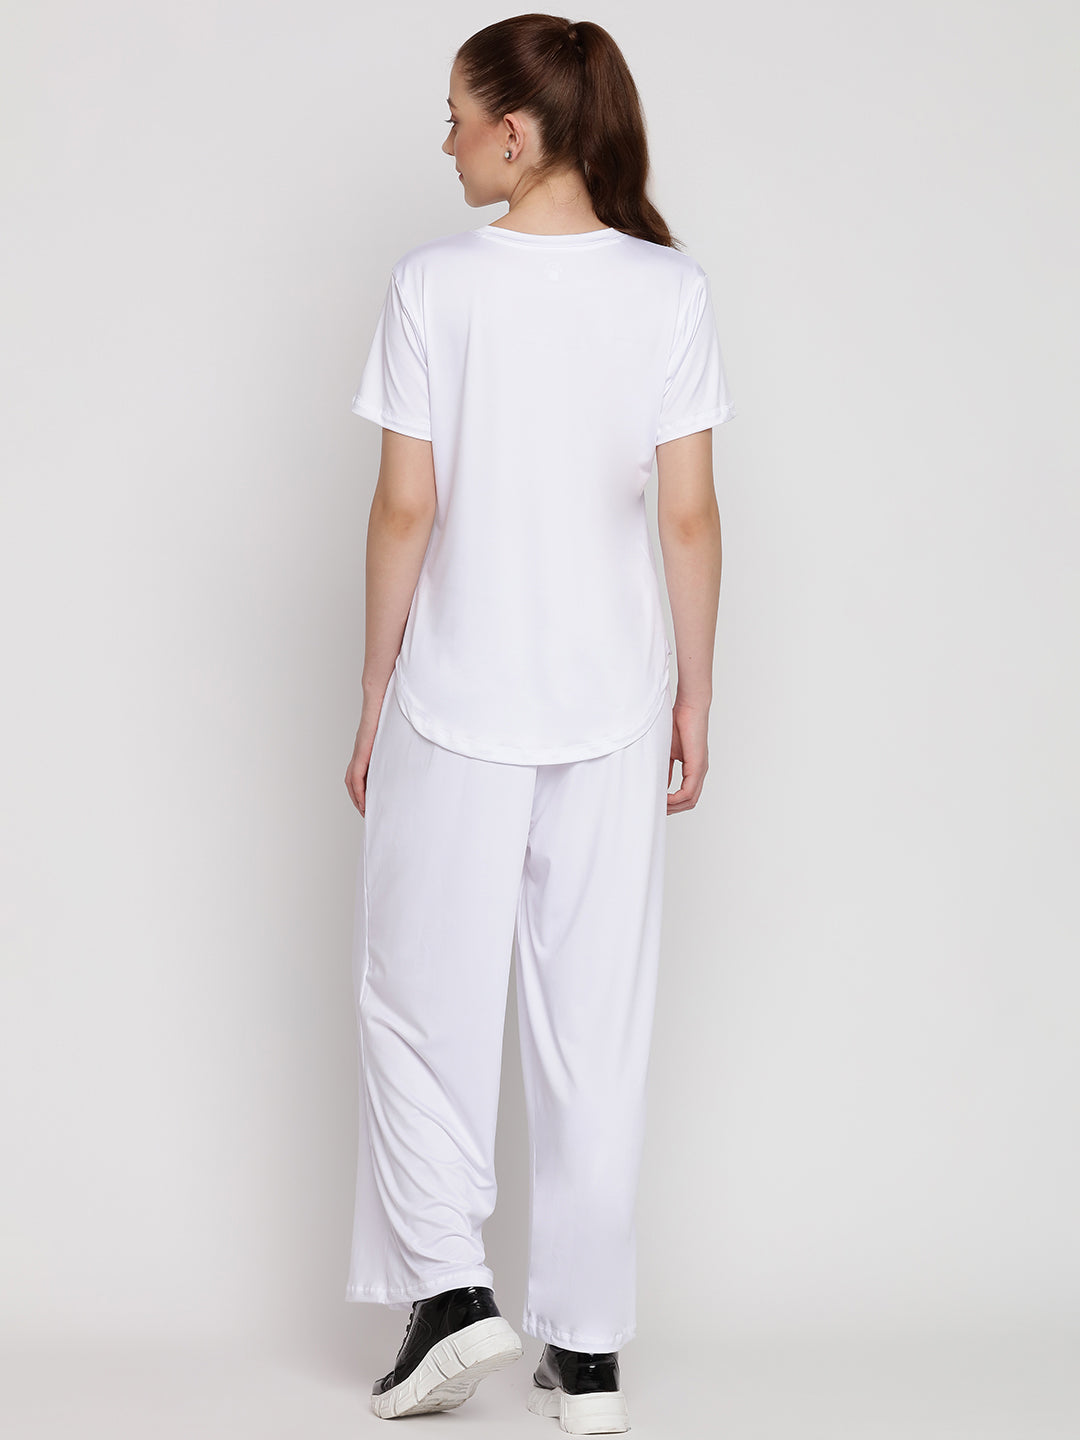 Harmony Pants & Tee Set - White